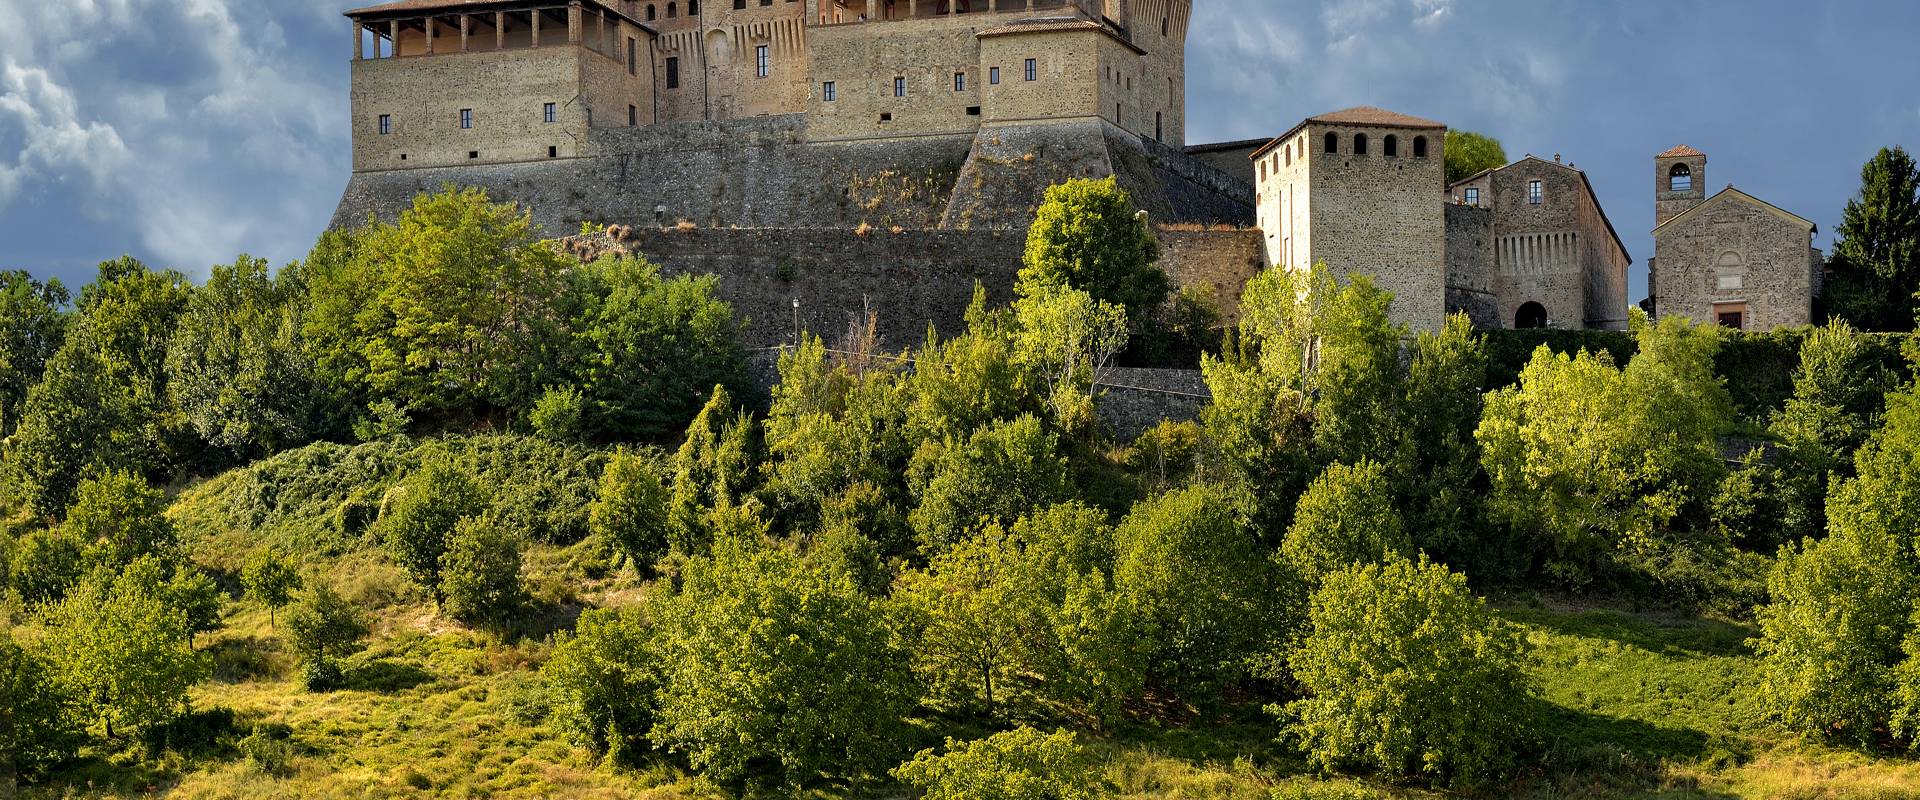 Castello di Torrechiara e dintorni photo by Carlo grifone